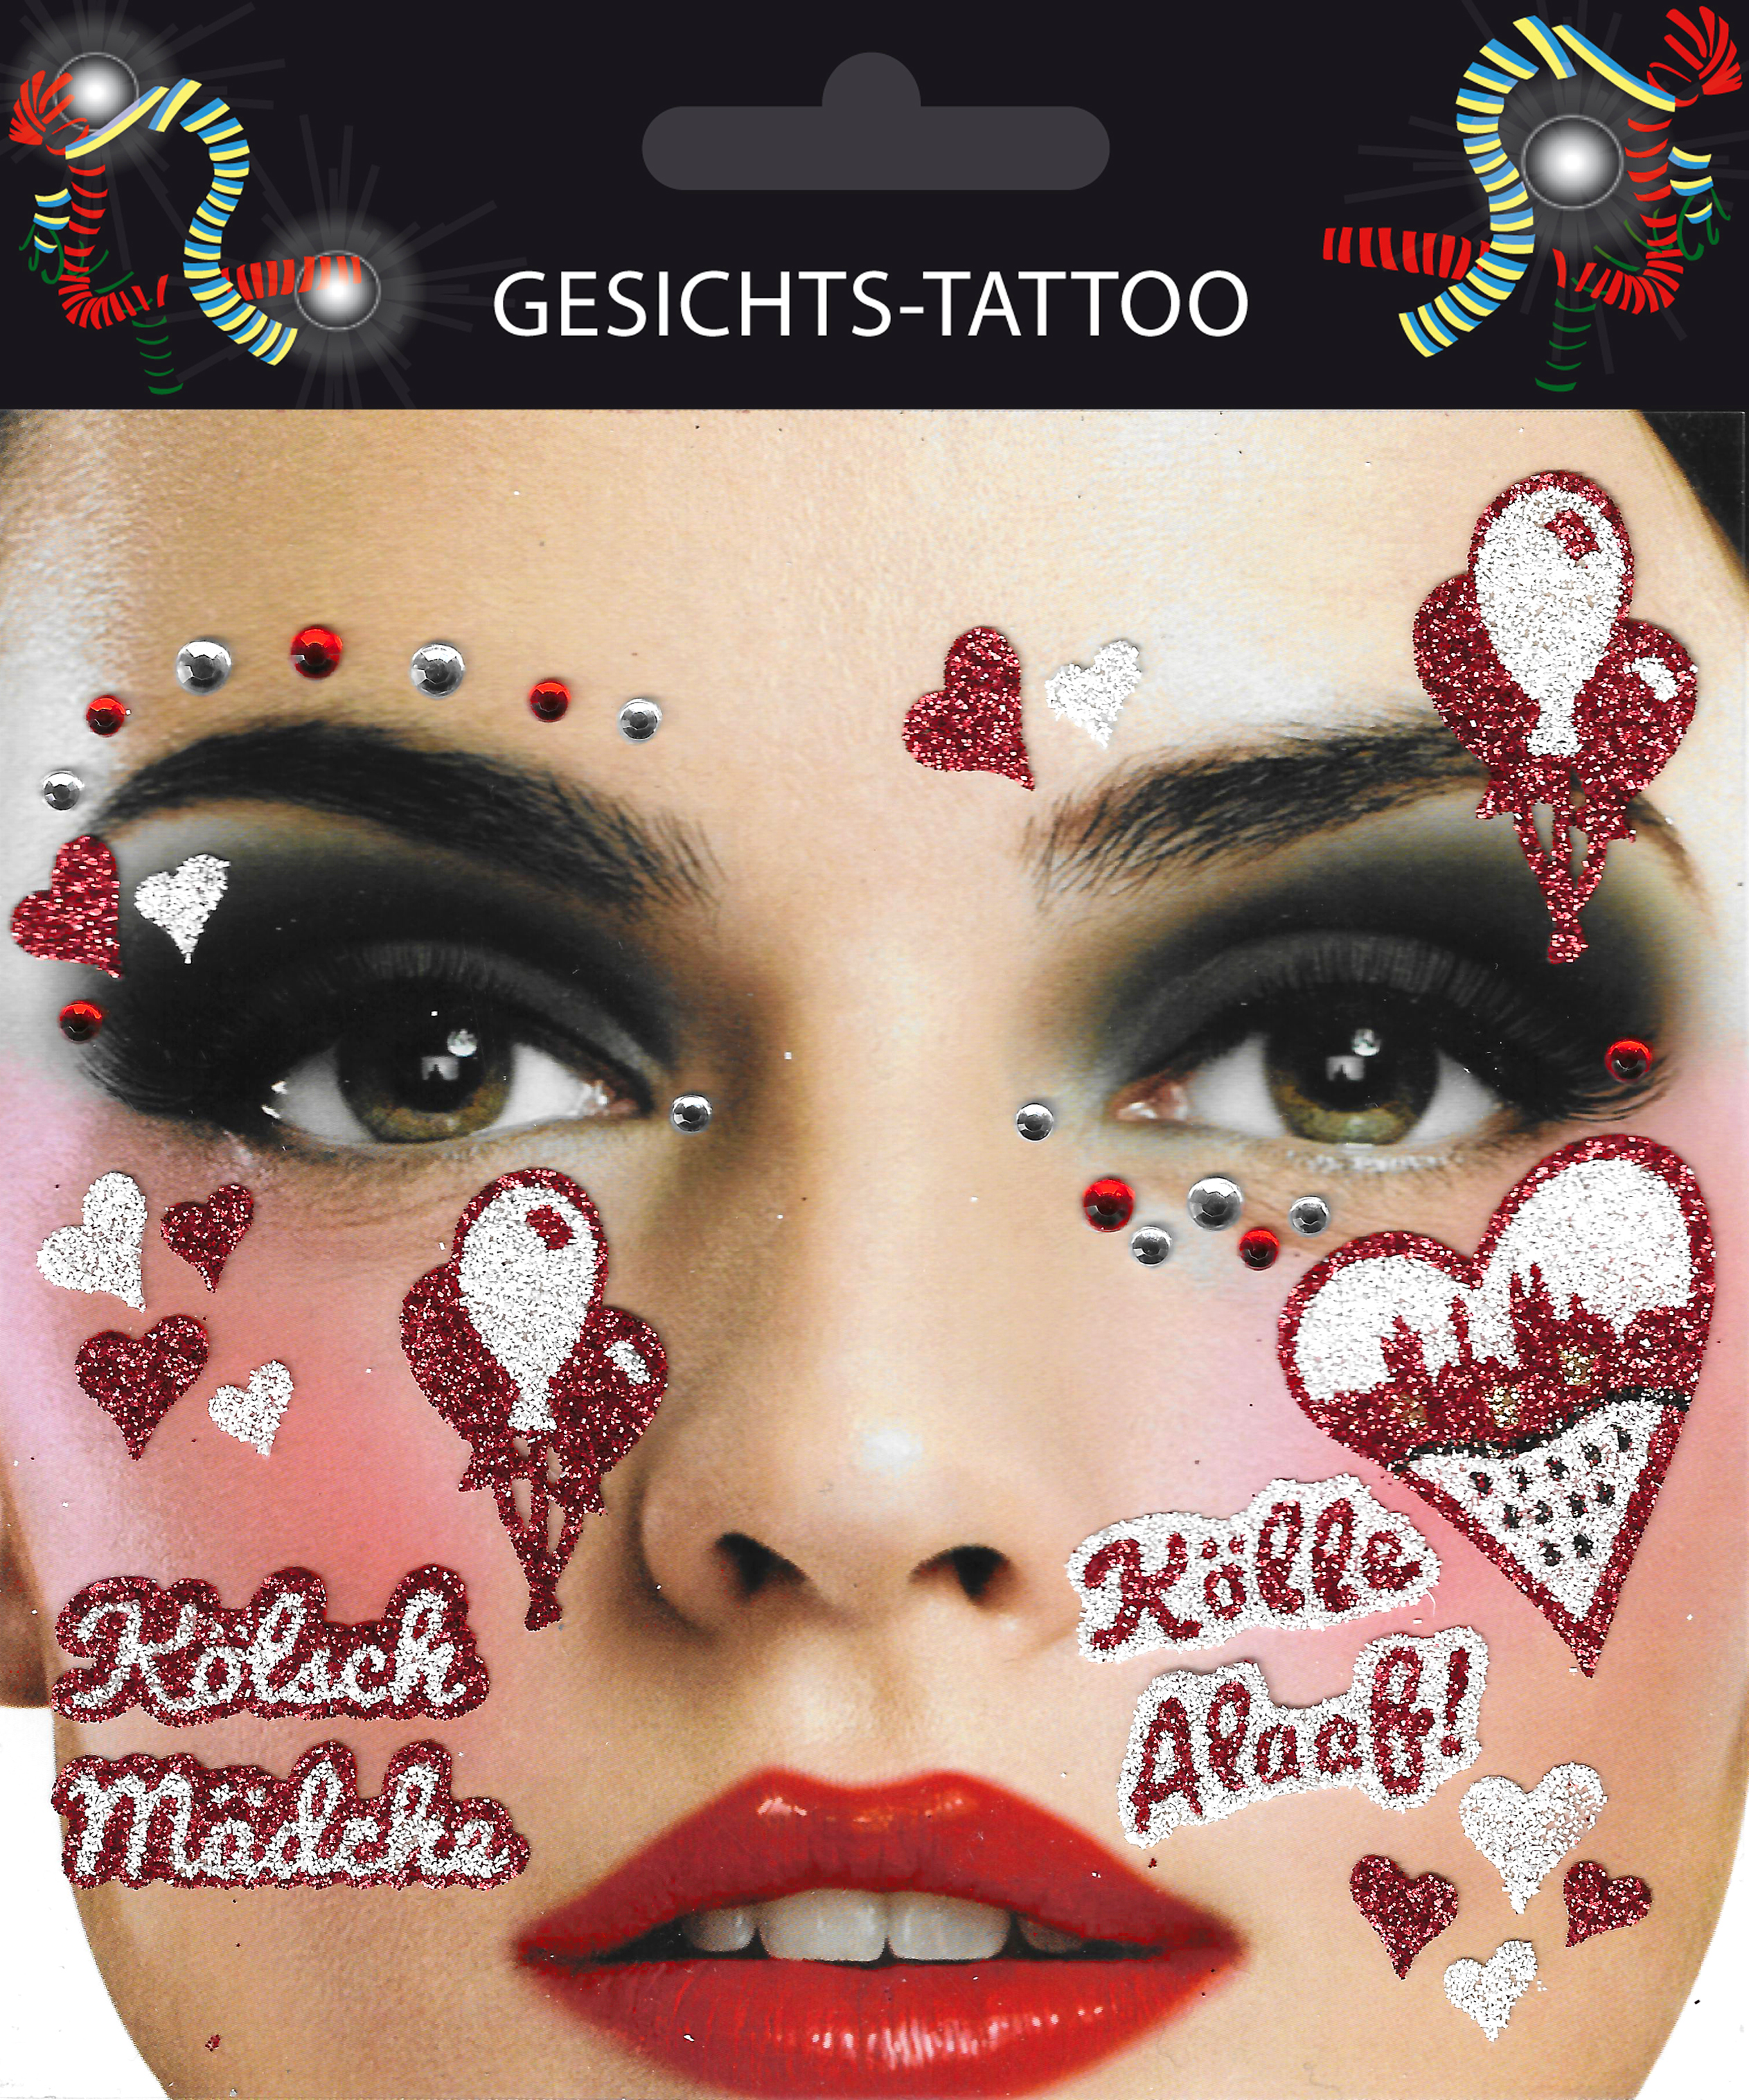 Kölsche tattoos - Die TOP Auswahl unter der Vielzahl an verglichenenKölsche tattoos!